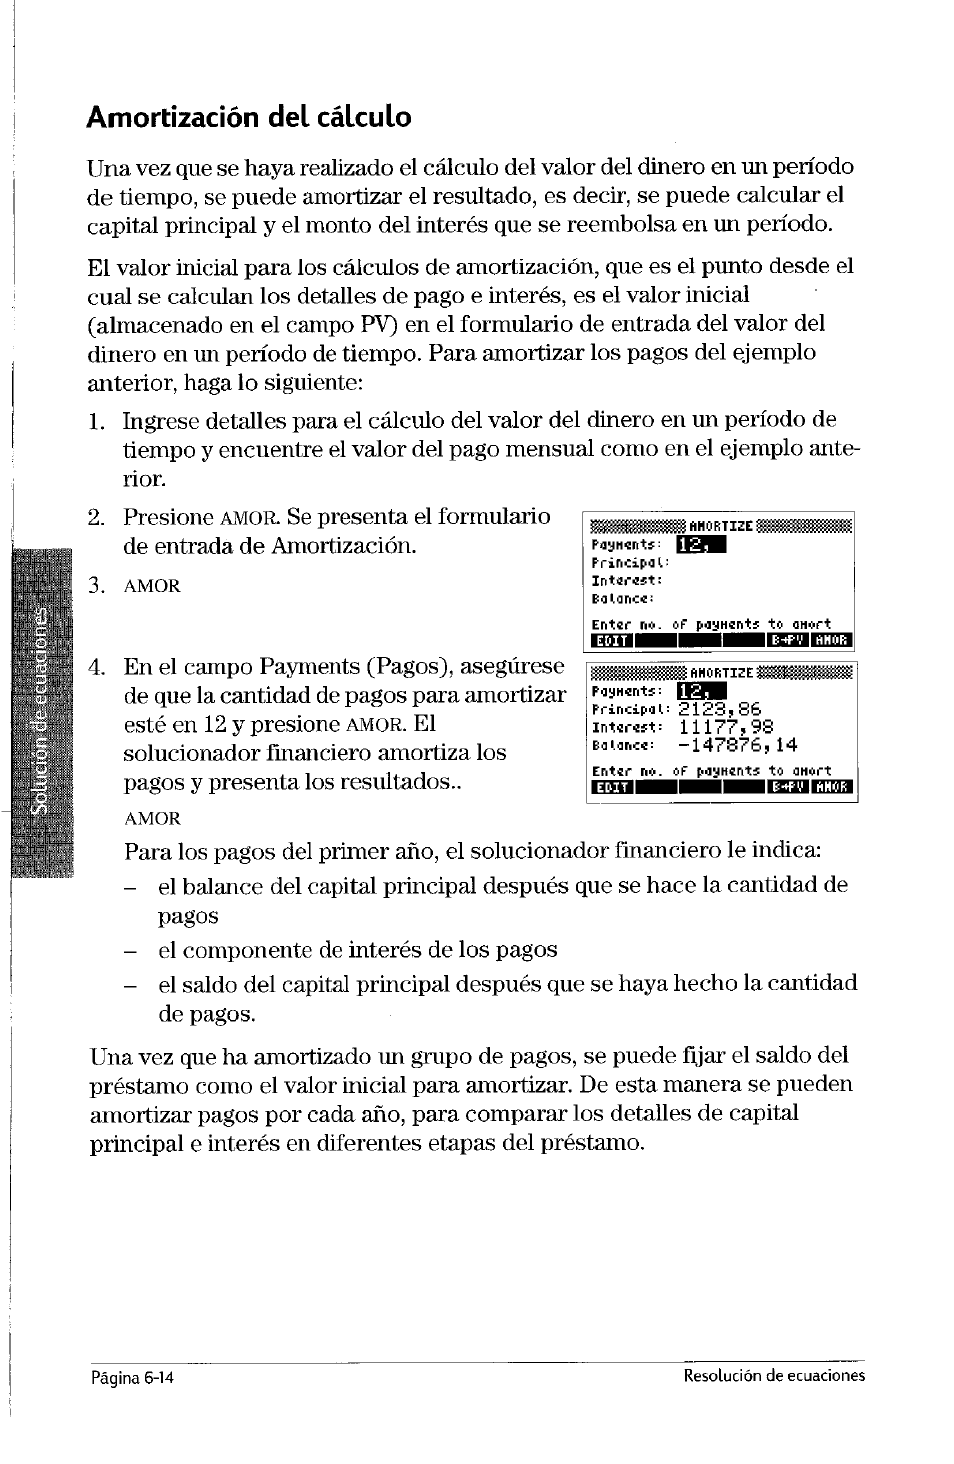 Amortización del cálculo, Amortización del cálculo -14 | HP Calculadora Gráfica HP 49g Manual del usuario | Página 149 / 253